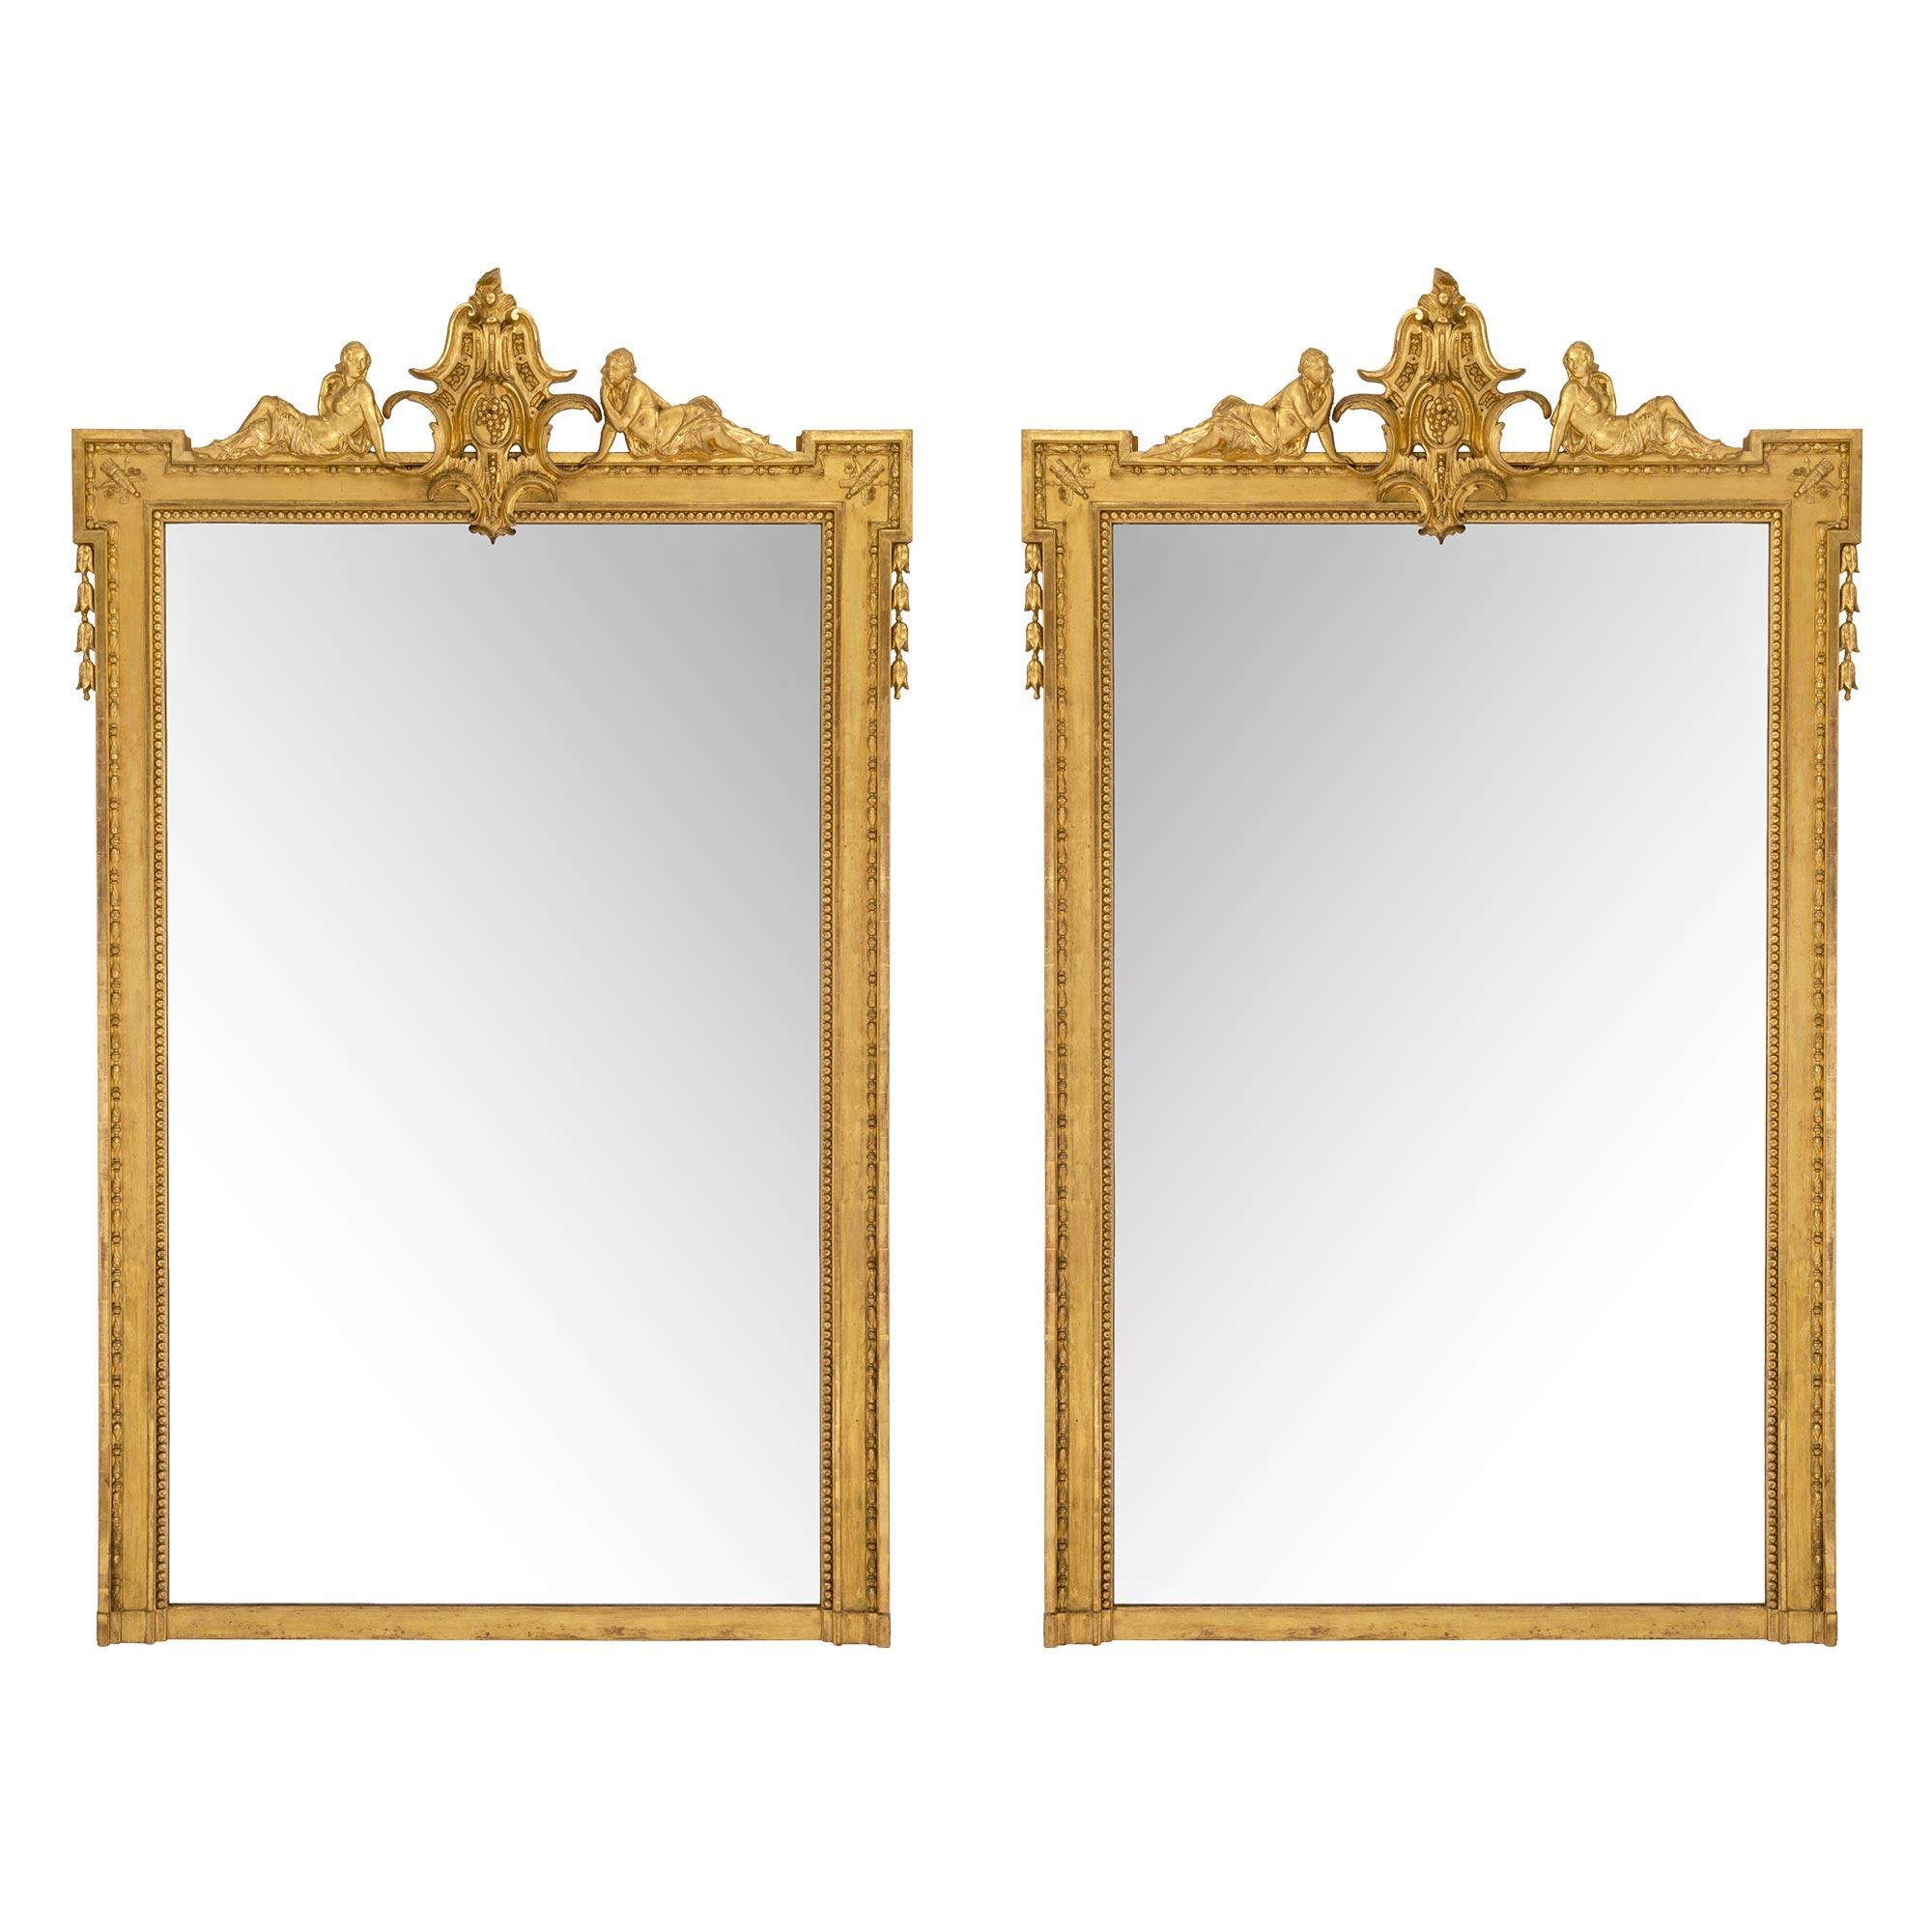 Paire impressionnante et de grande taille de miroirs en bois doré de style Louis XVI du milieu du XIXe siècle. La paire comporte un grand rang de perles à côté d'une bordure moulée avec un motif d'œuf et de fléchette. Au sommet se trouve une réserve